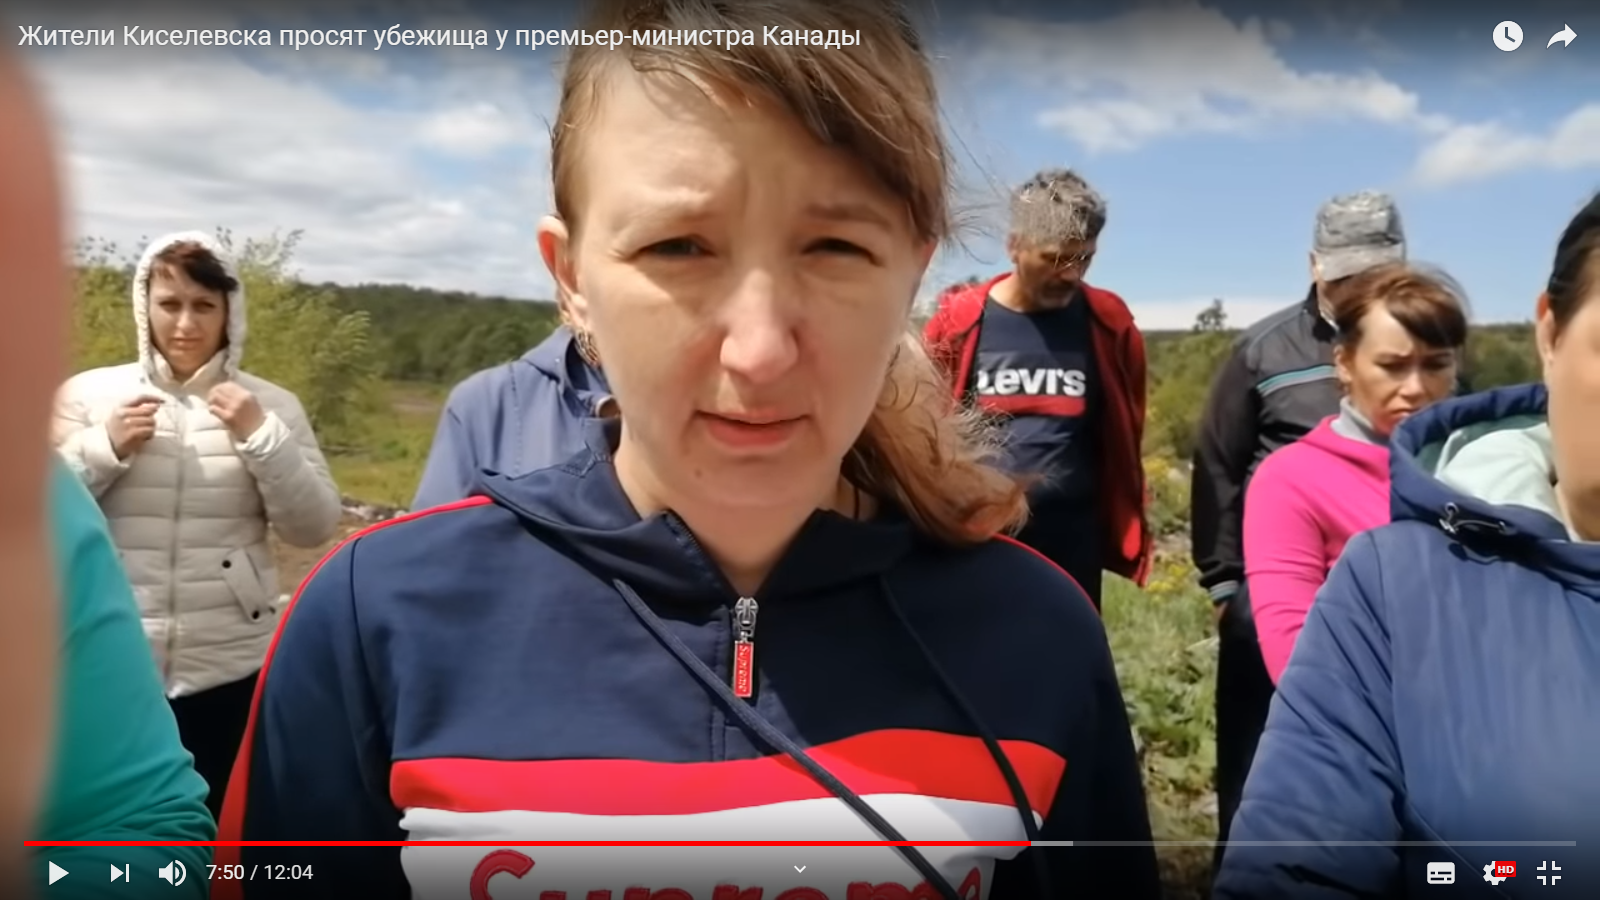 "Хотим выжить": жители Киселёвска обратились к властям Канады (видео)